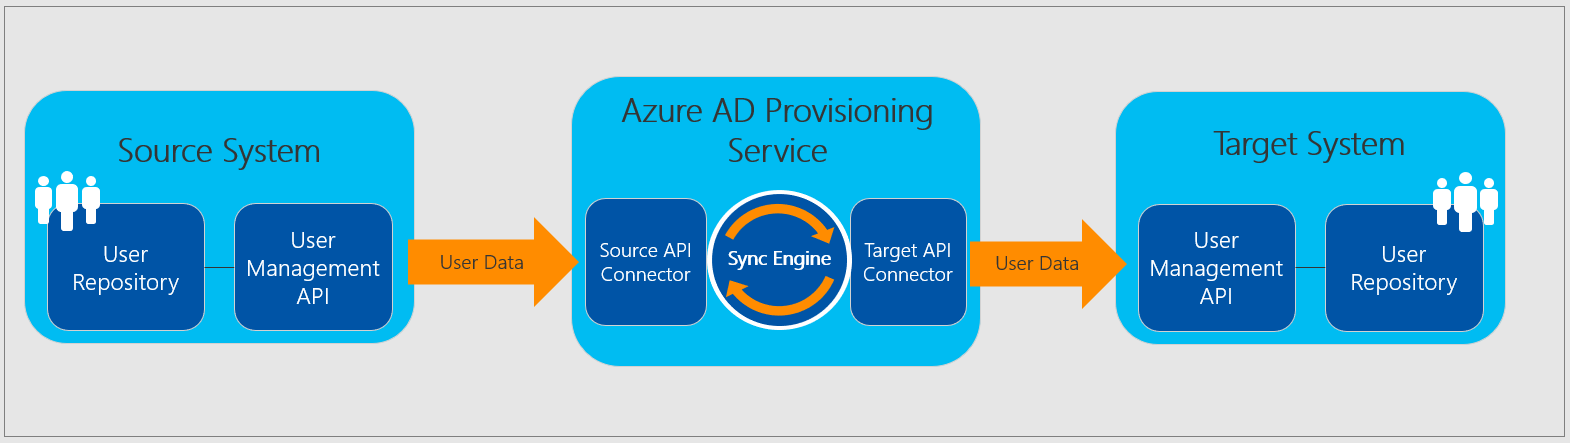 Servicio de aprovisionamiento de Azure AD